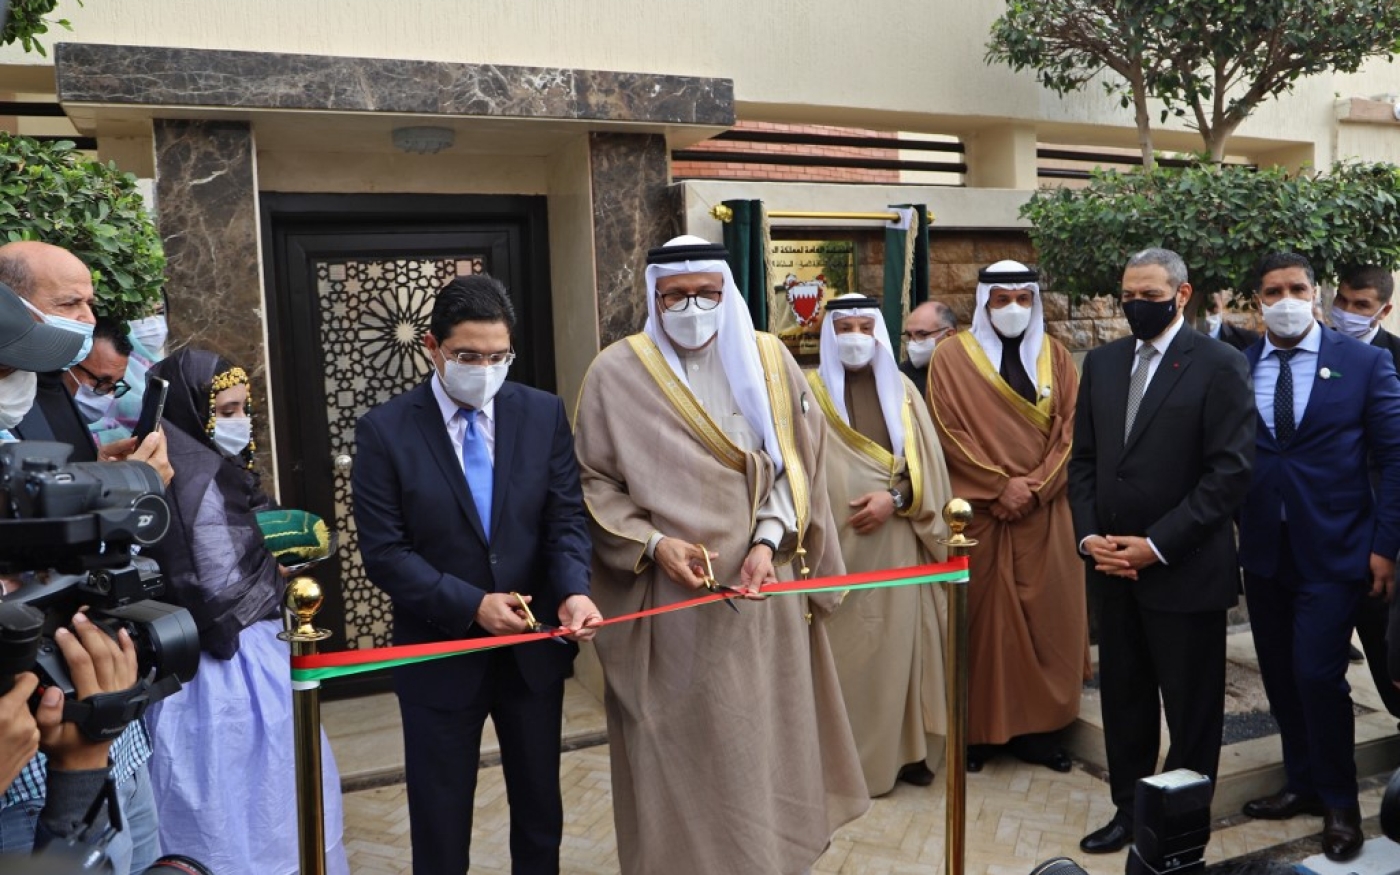 Le 14 décembre 2020, le ministre marocain des Affaires étrangères Nasser Bourita et son homologue bahreïni Abdellatif al-Zayani inaugurent le consulat de Bahreïn à Laâyoune (AFP)